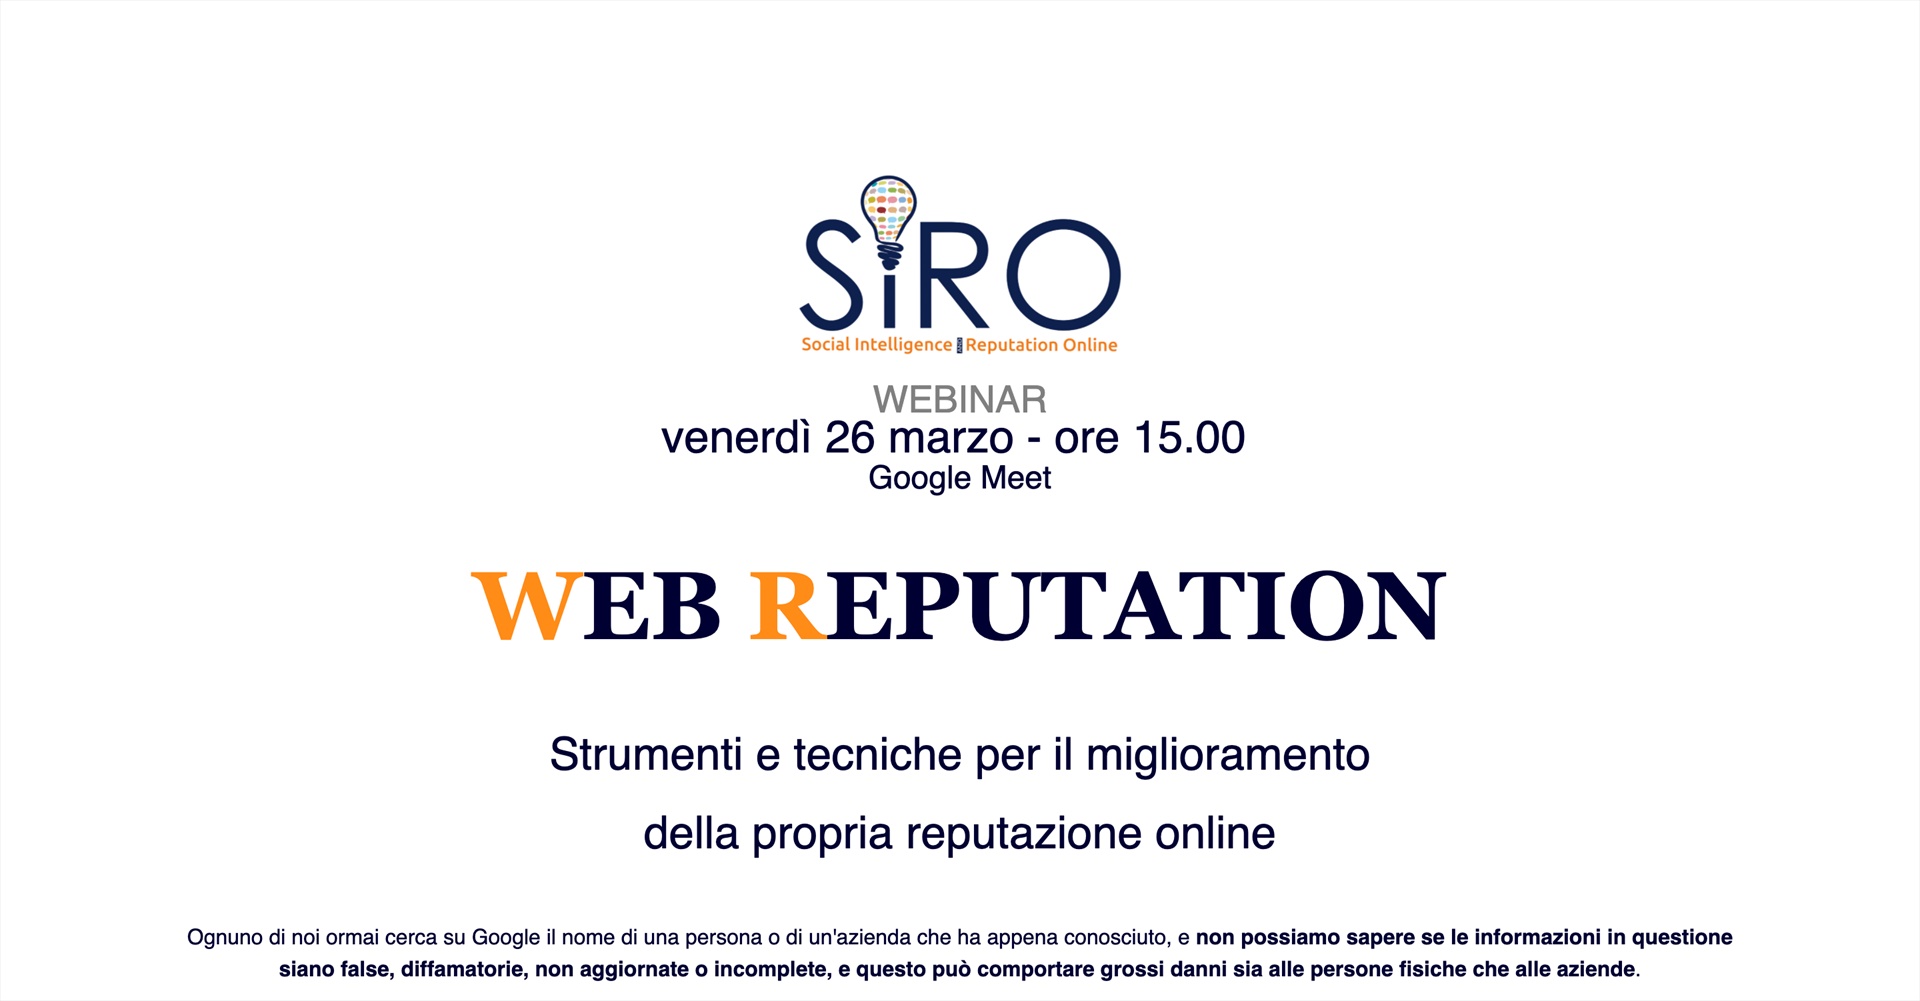 SIRO - EVENTI - Webinar: Web Reputation - Strumenti e tecniche per il miglioramento della propria reputazione online